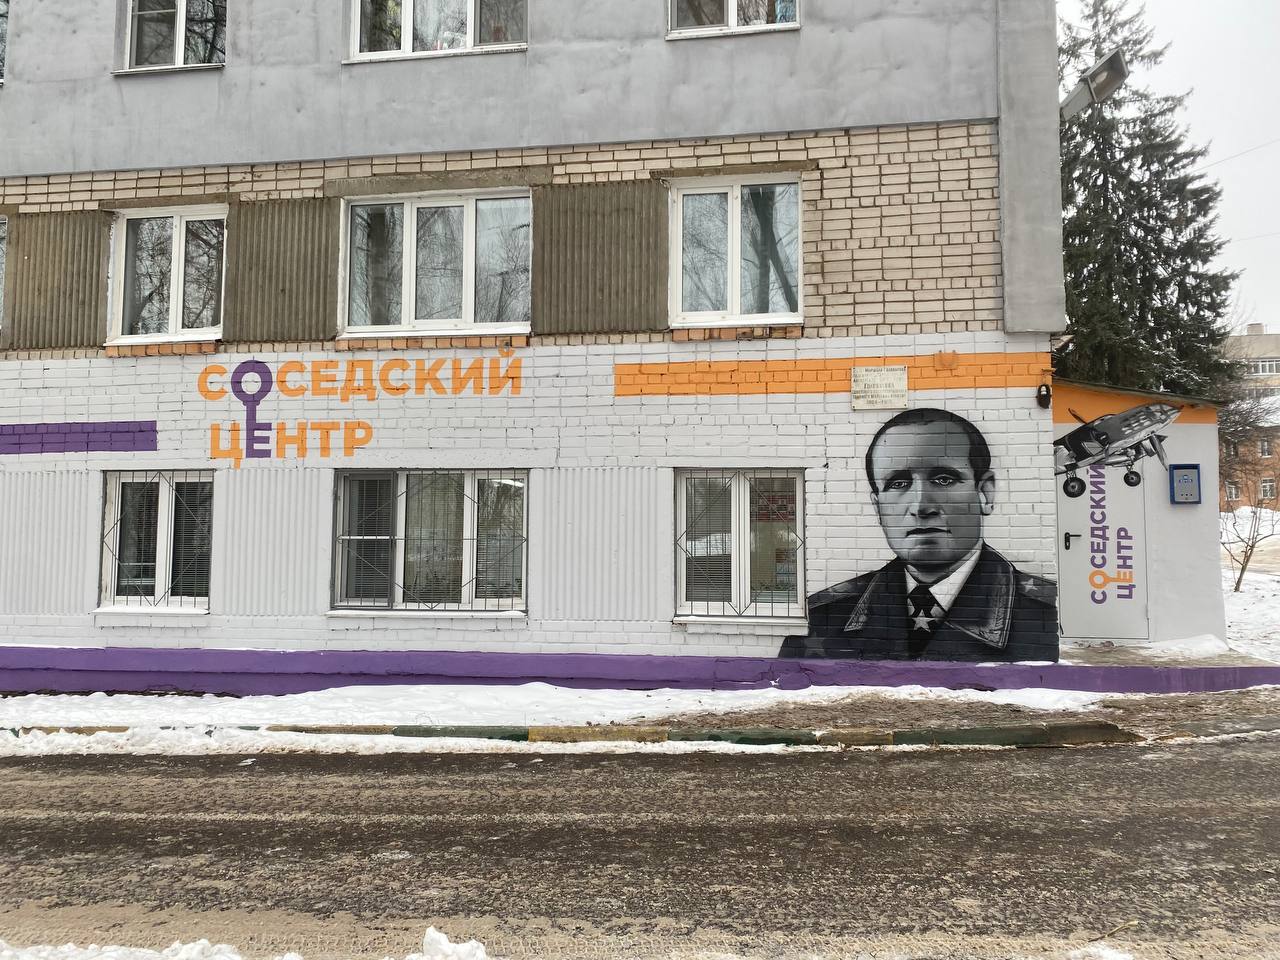 Граффити с портретом маршала Голованова появилось в микрорайоне Щербинки Нижнего Новгорода